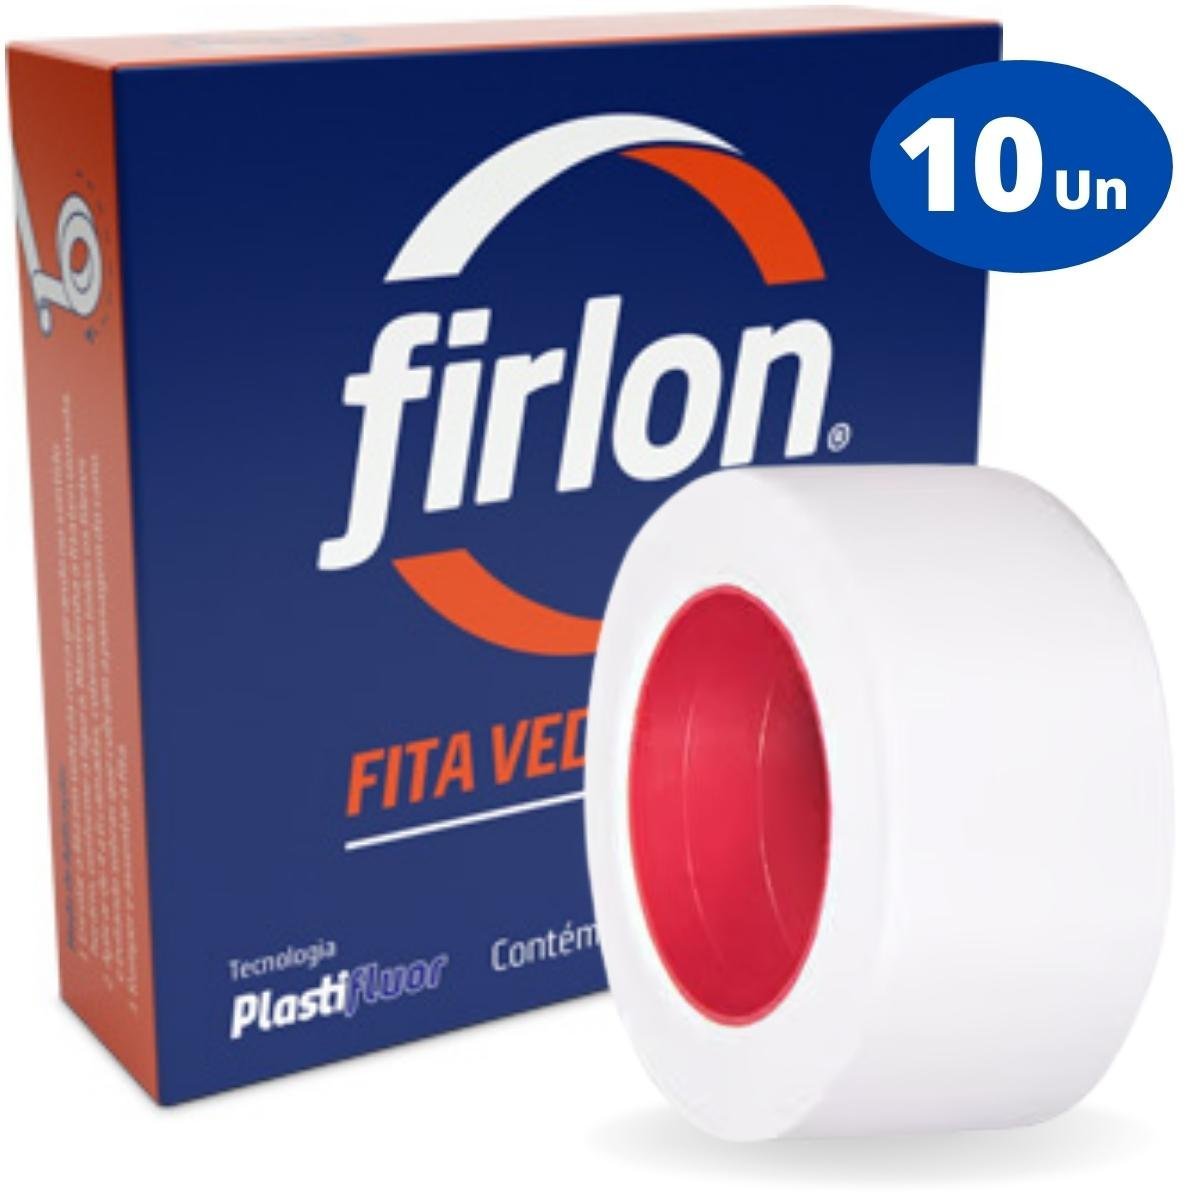 Fita Veda Rosca Teflon 18mm x 50m | Firlon | Kit 10 Un - 1